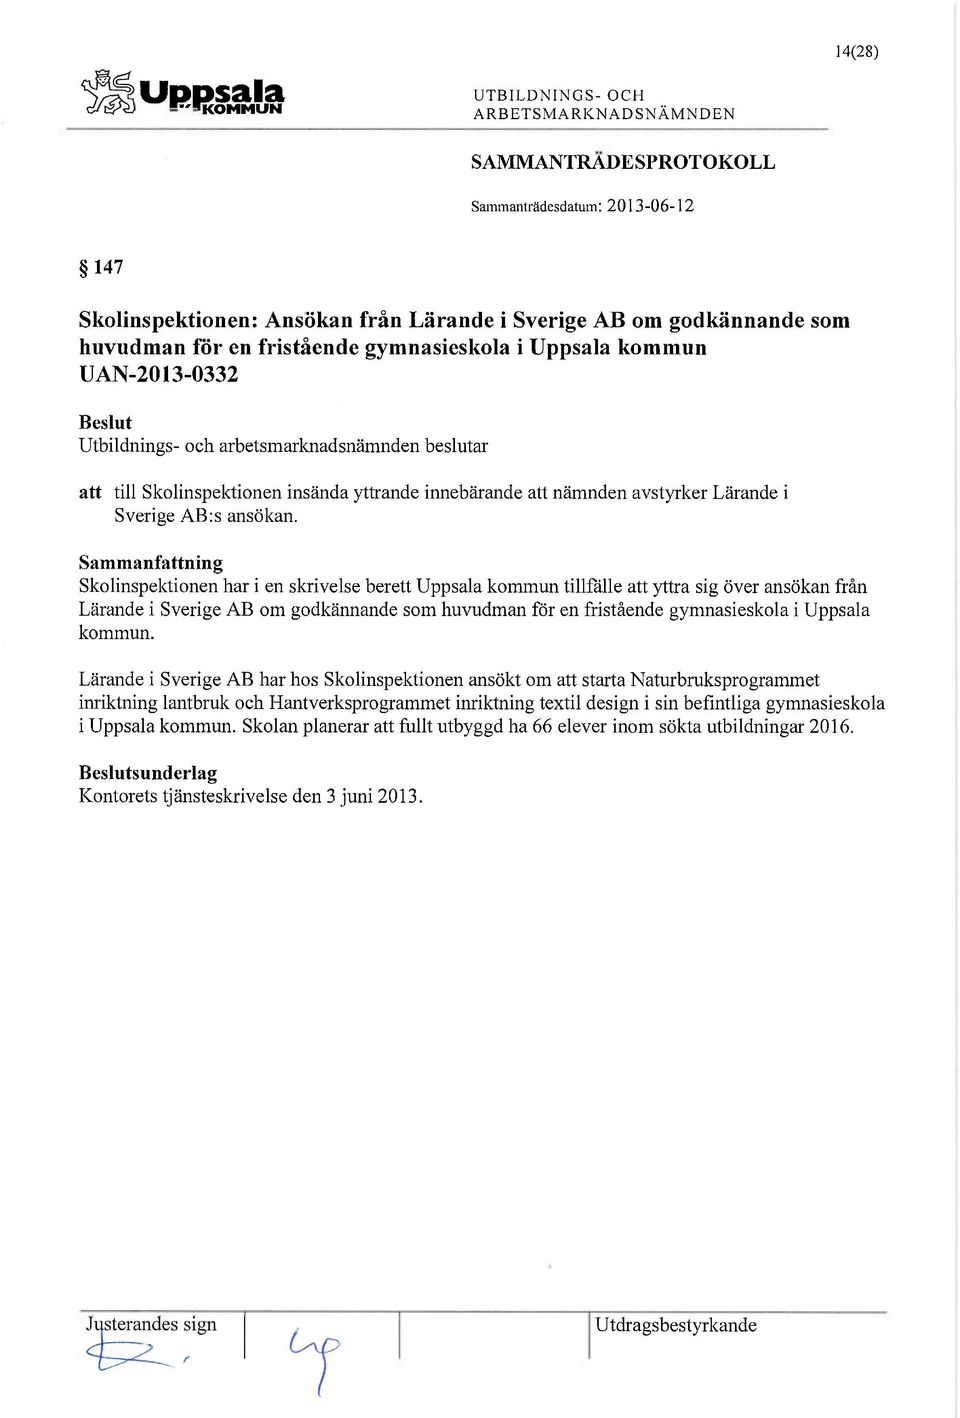 Skolinspektionen har i en skrivelse berett Uppsala kommun tillfälle att yttra sig över ansökan från Lärande i Sverige AB om godkännande som huvudman för en fristående gymnasieskola i Uppsala kommun.